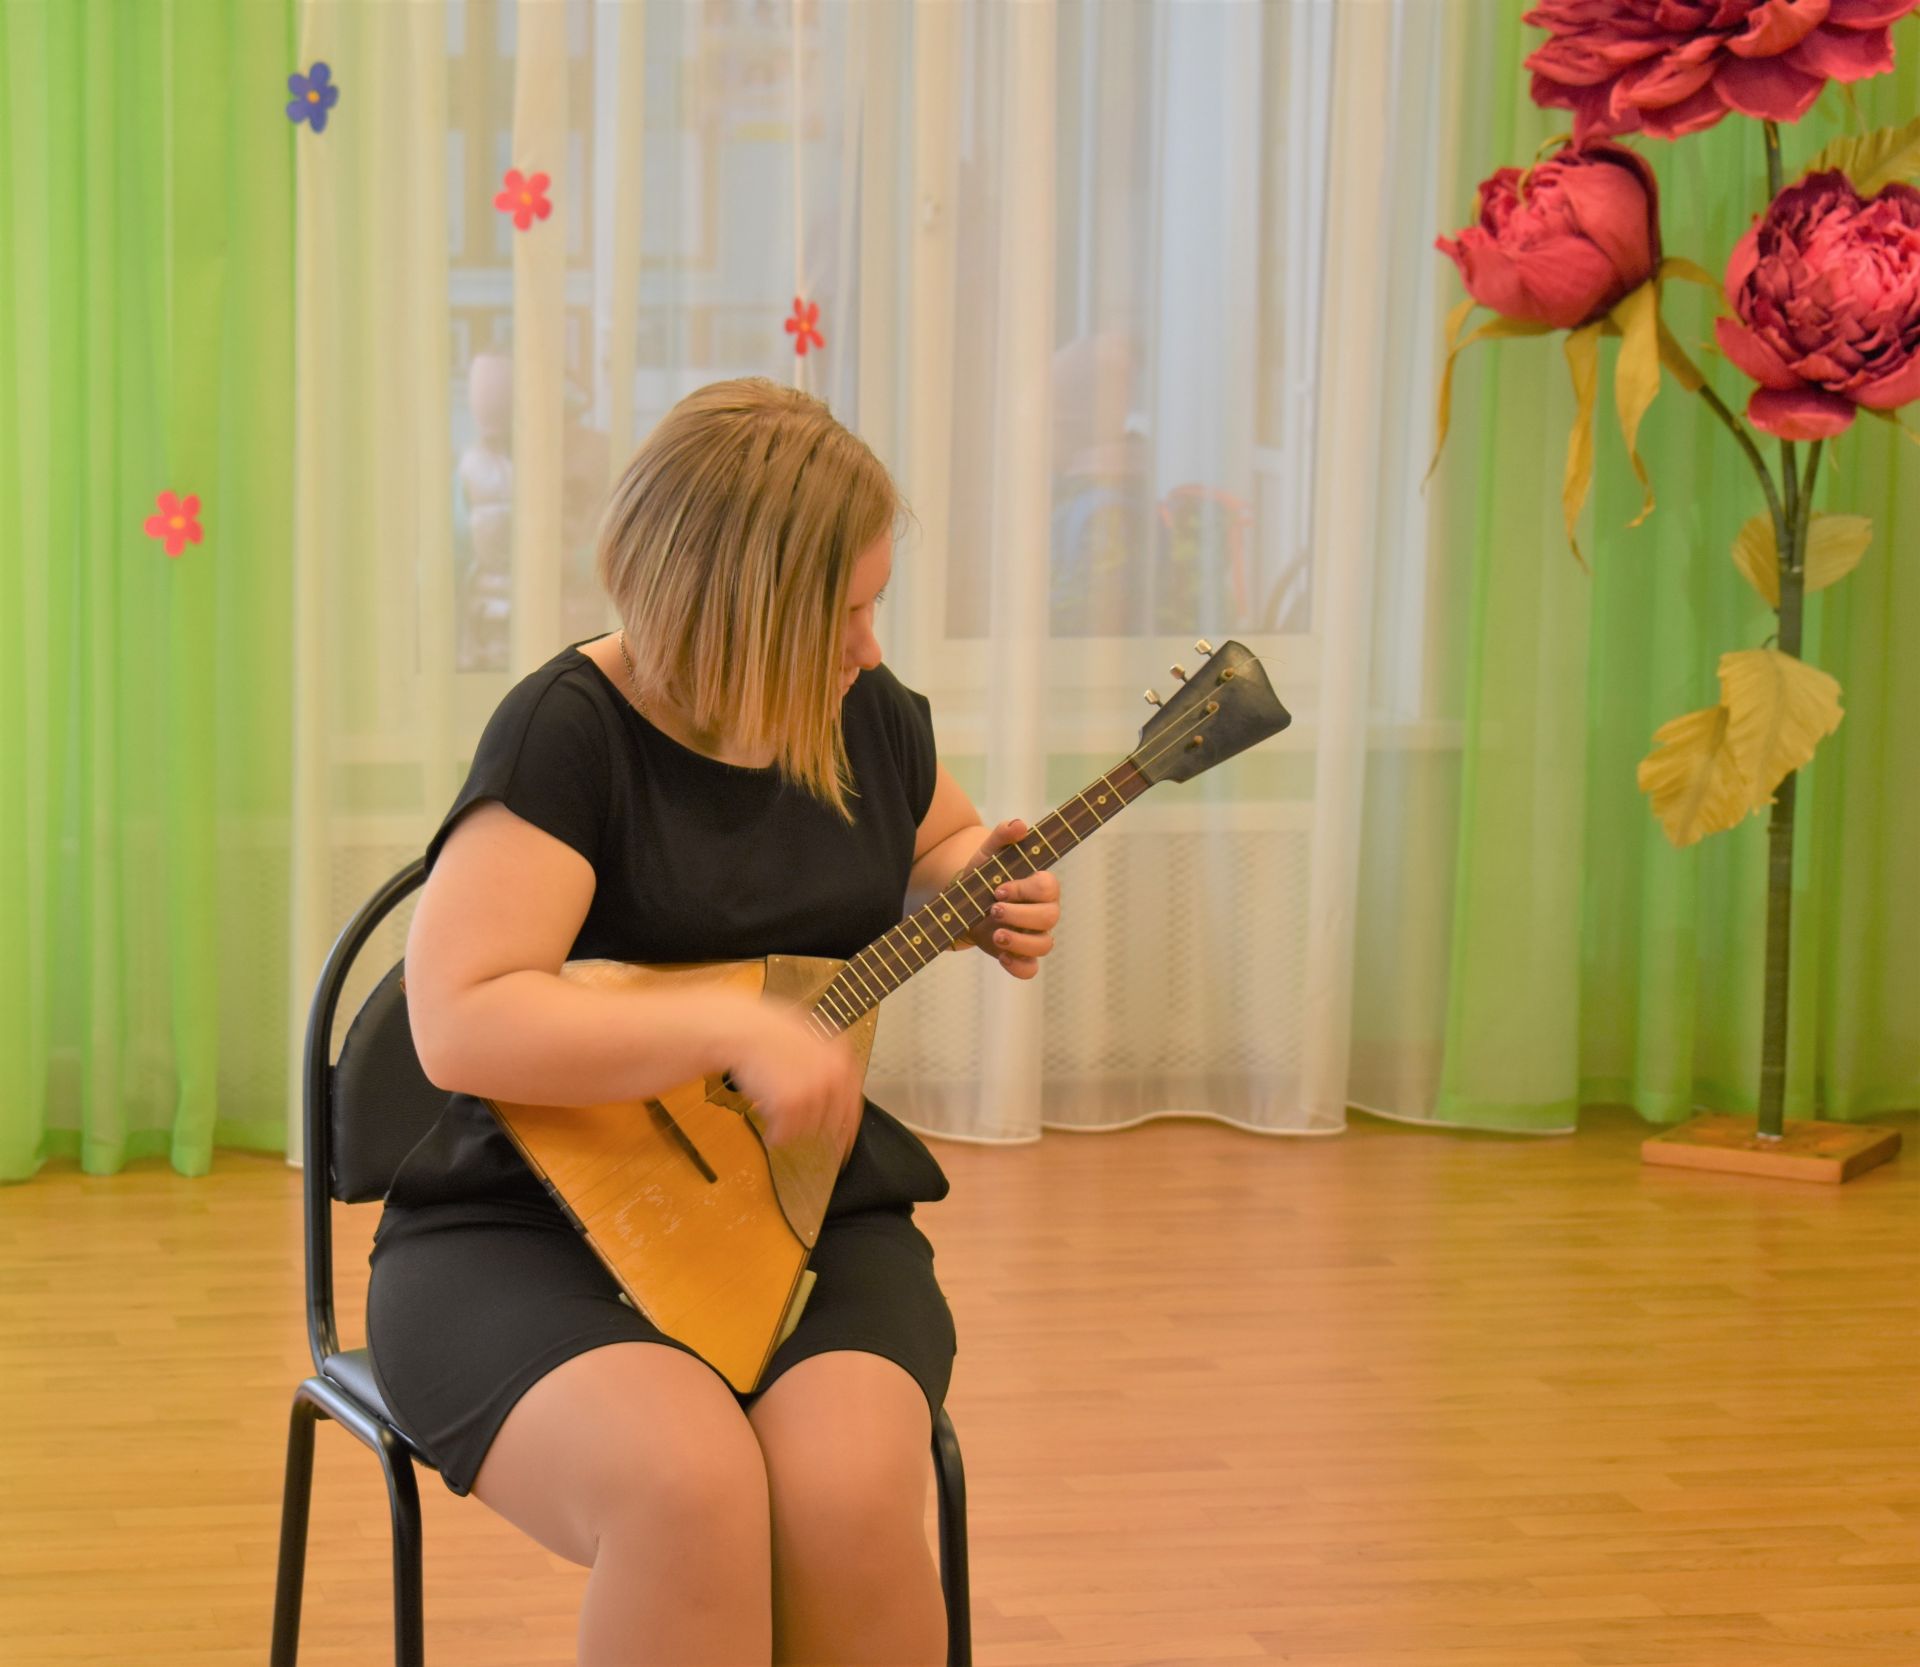 Музыкальная карусель в детском саду «Огонёк»